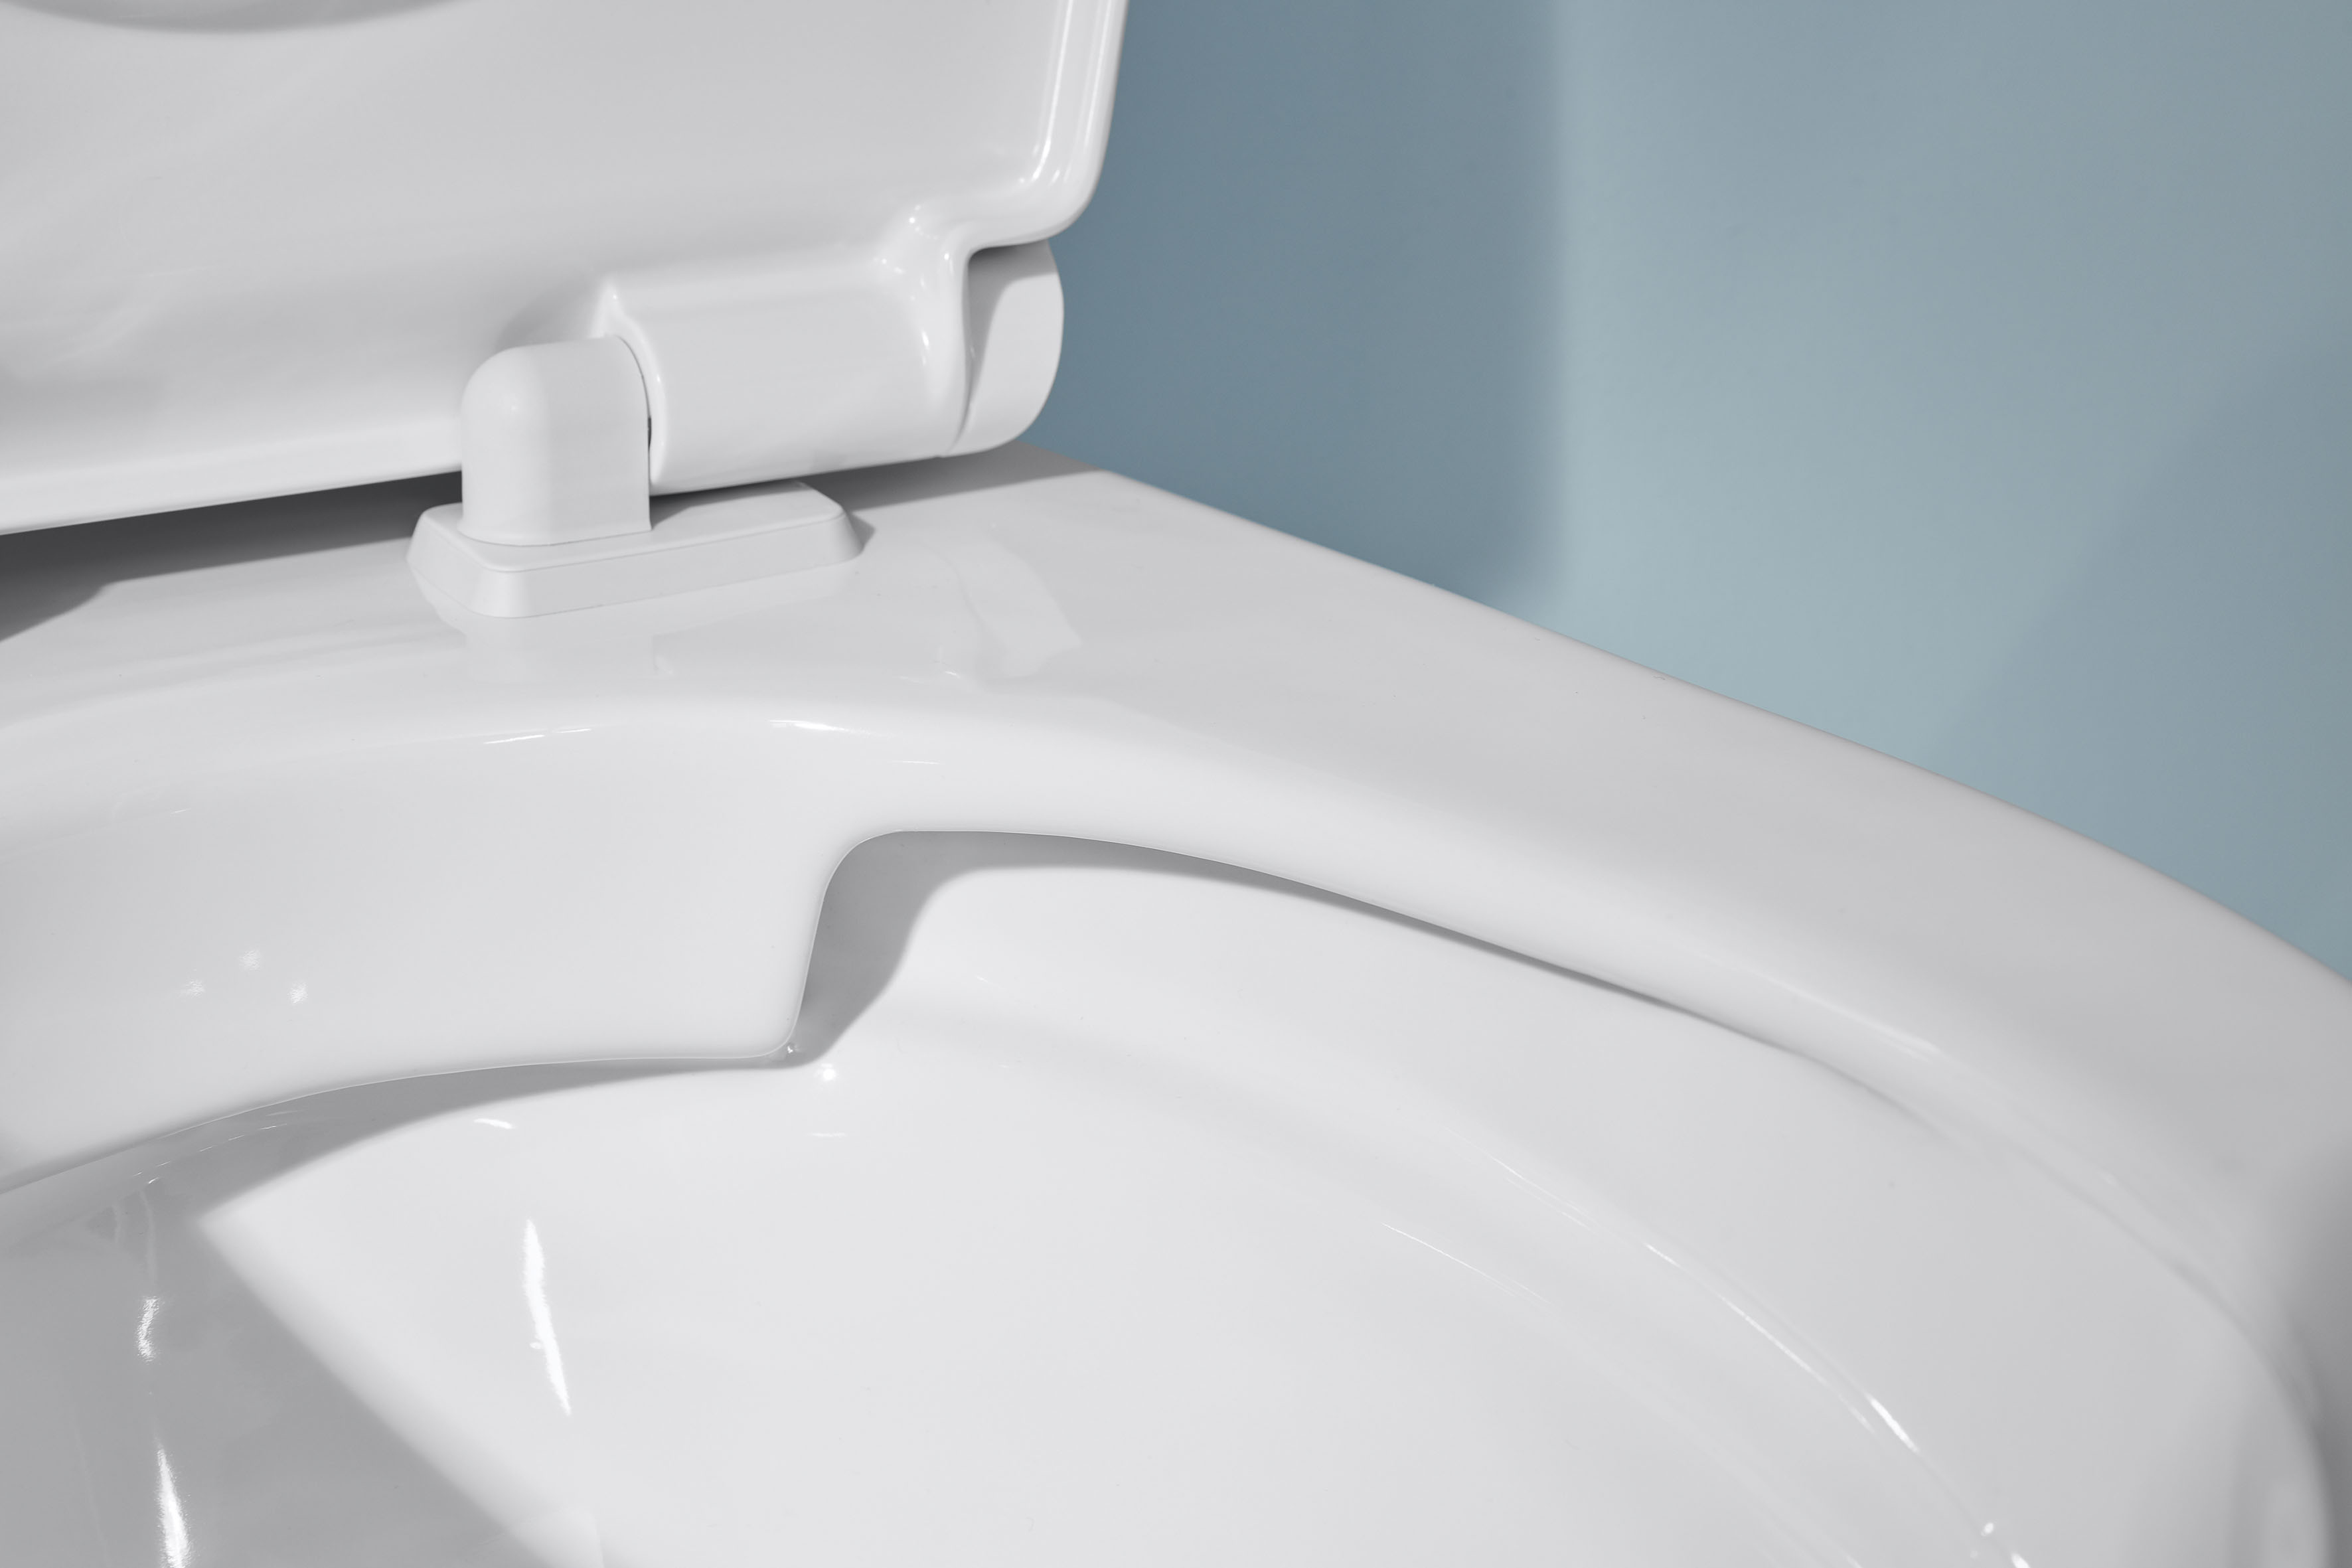 Tiefspül WC spülrandlos FS11125A000004 36,4 × 37 × 53 cm